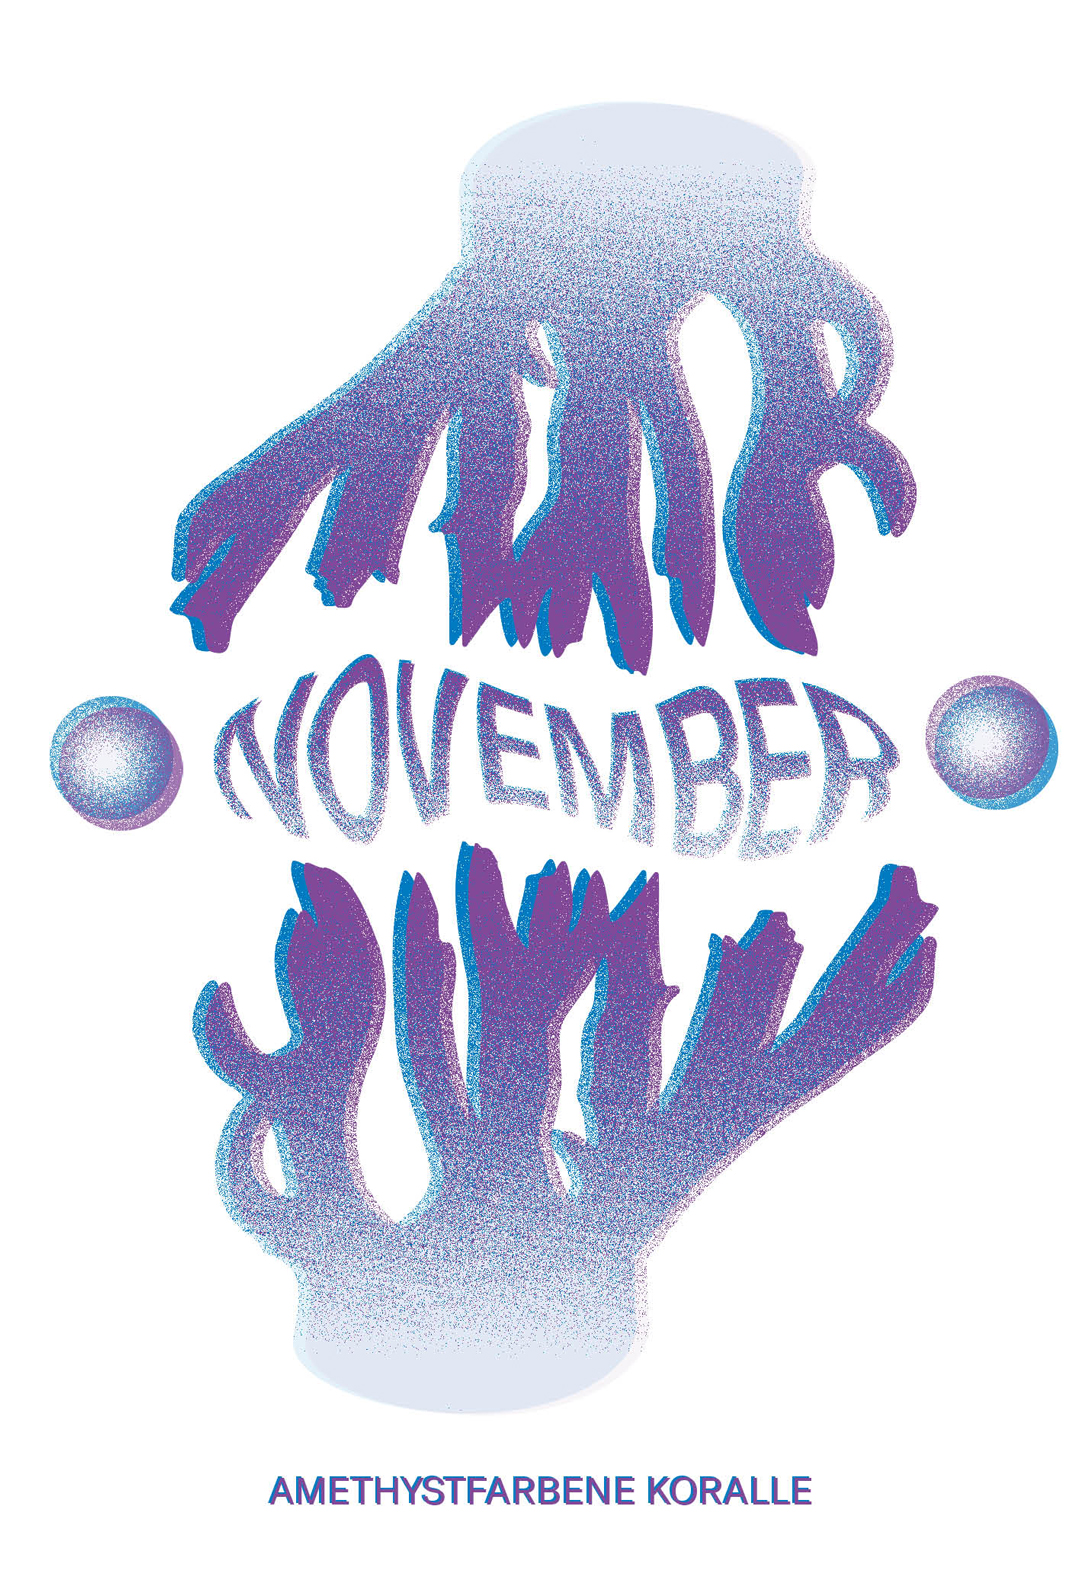 Amethystfarbene Koralle in den färben violett und blau, im Stil einer Risographie mit dm Wort November